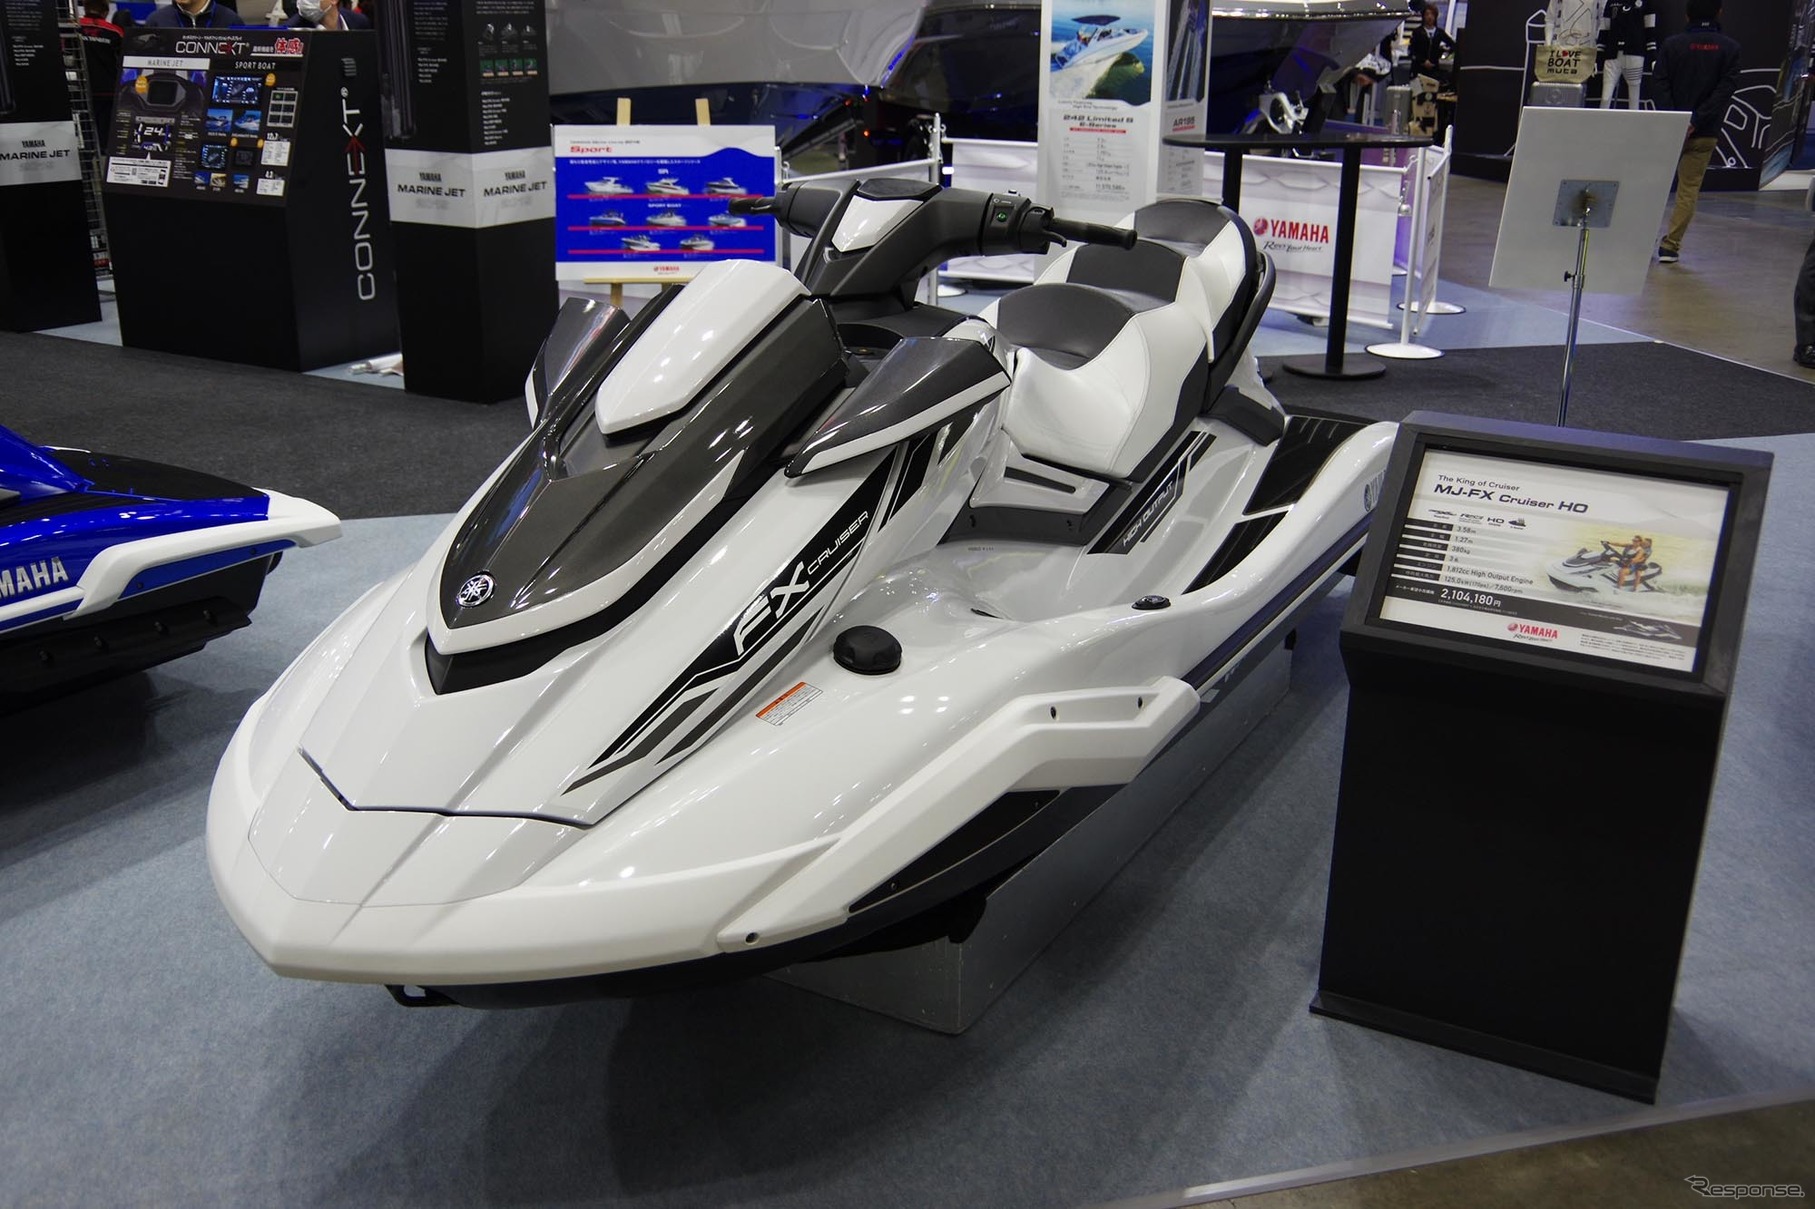 7年ぶりにモデルチェンジしたヤマハ発動機の水上オートバイ「MJ-FX Cruiser HO」（ジャパンインターナショナルボートショー2019）